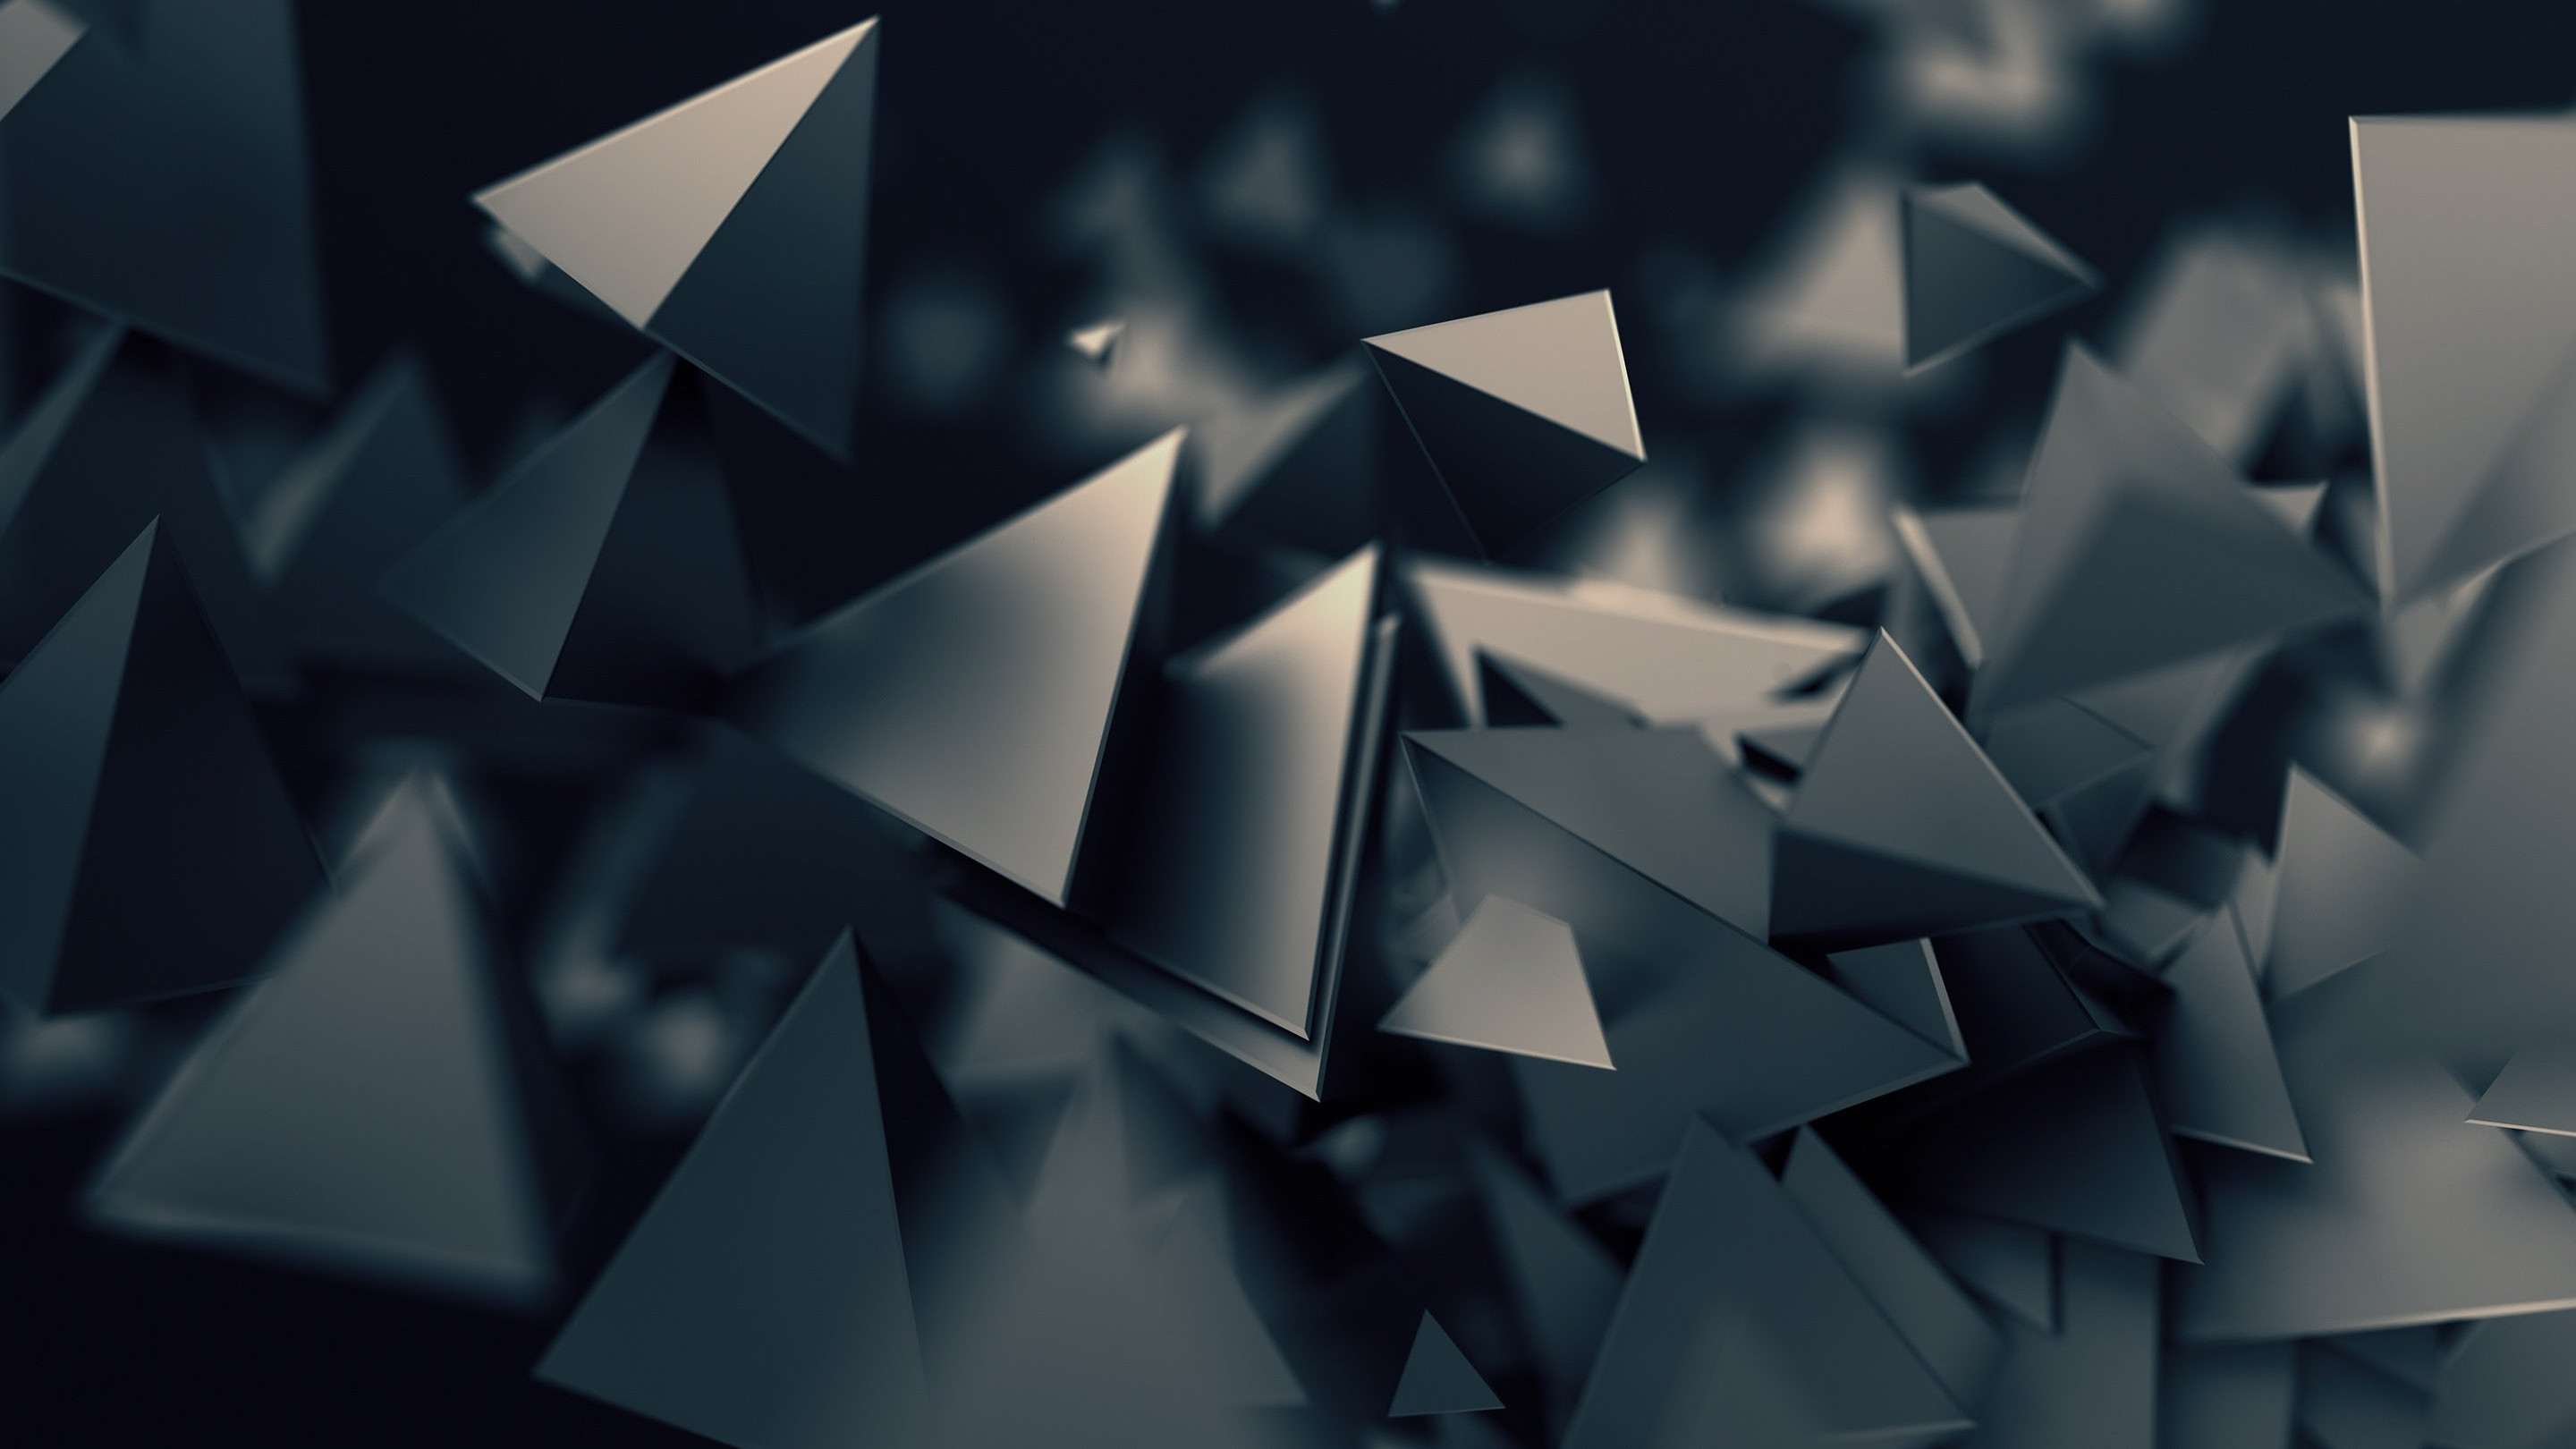 Triangular prisms wallpaper 2880x1620